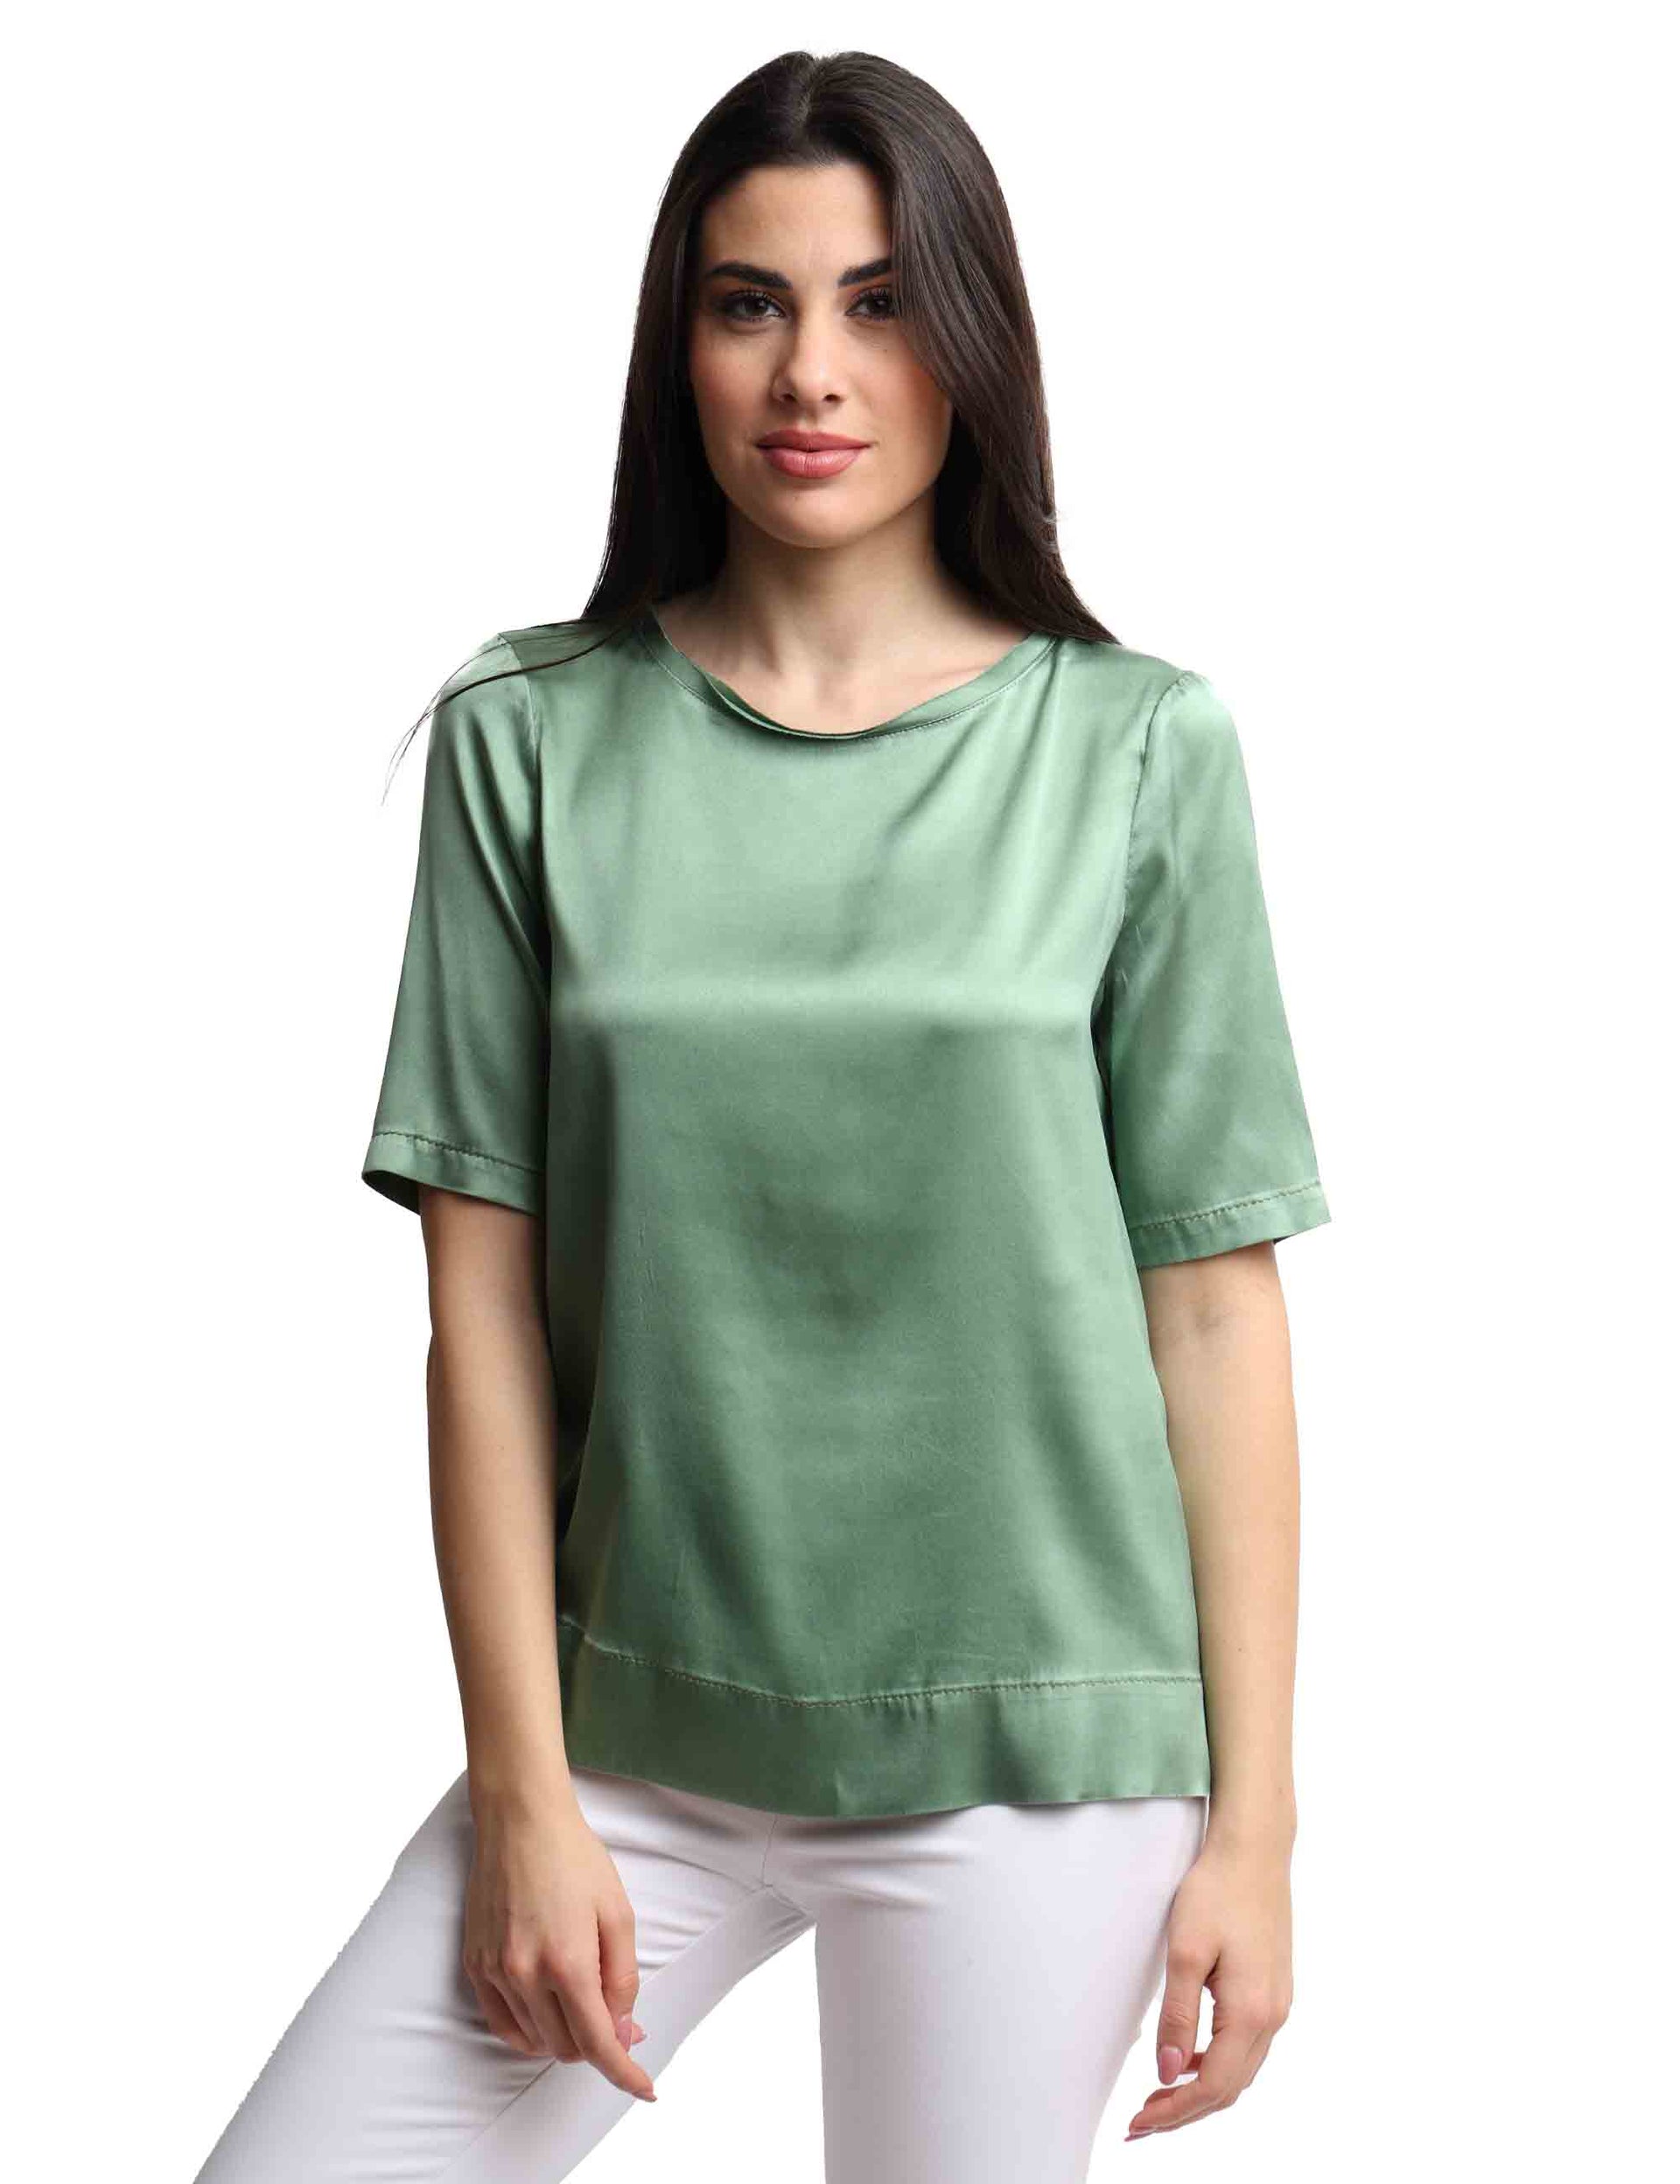 Silk Satin women's t-shirt in green silk